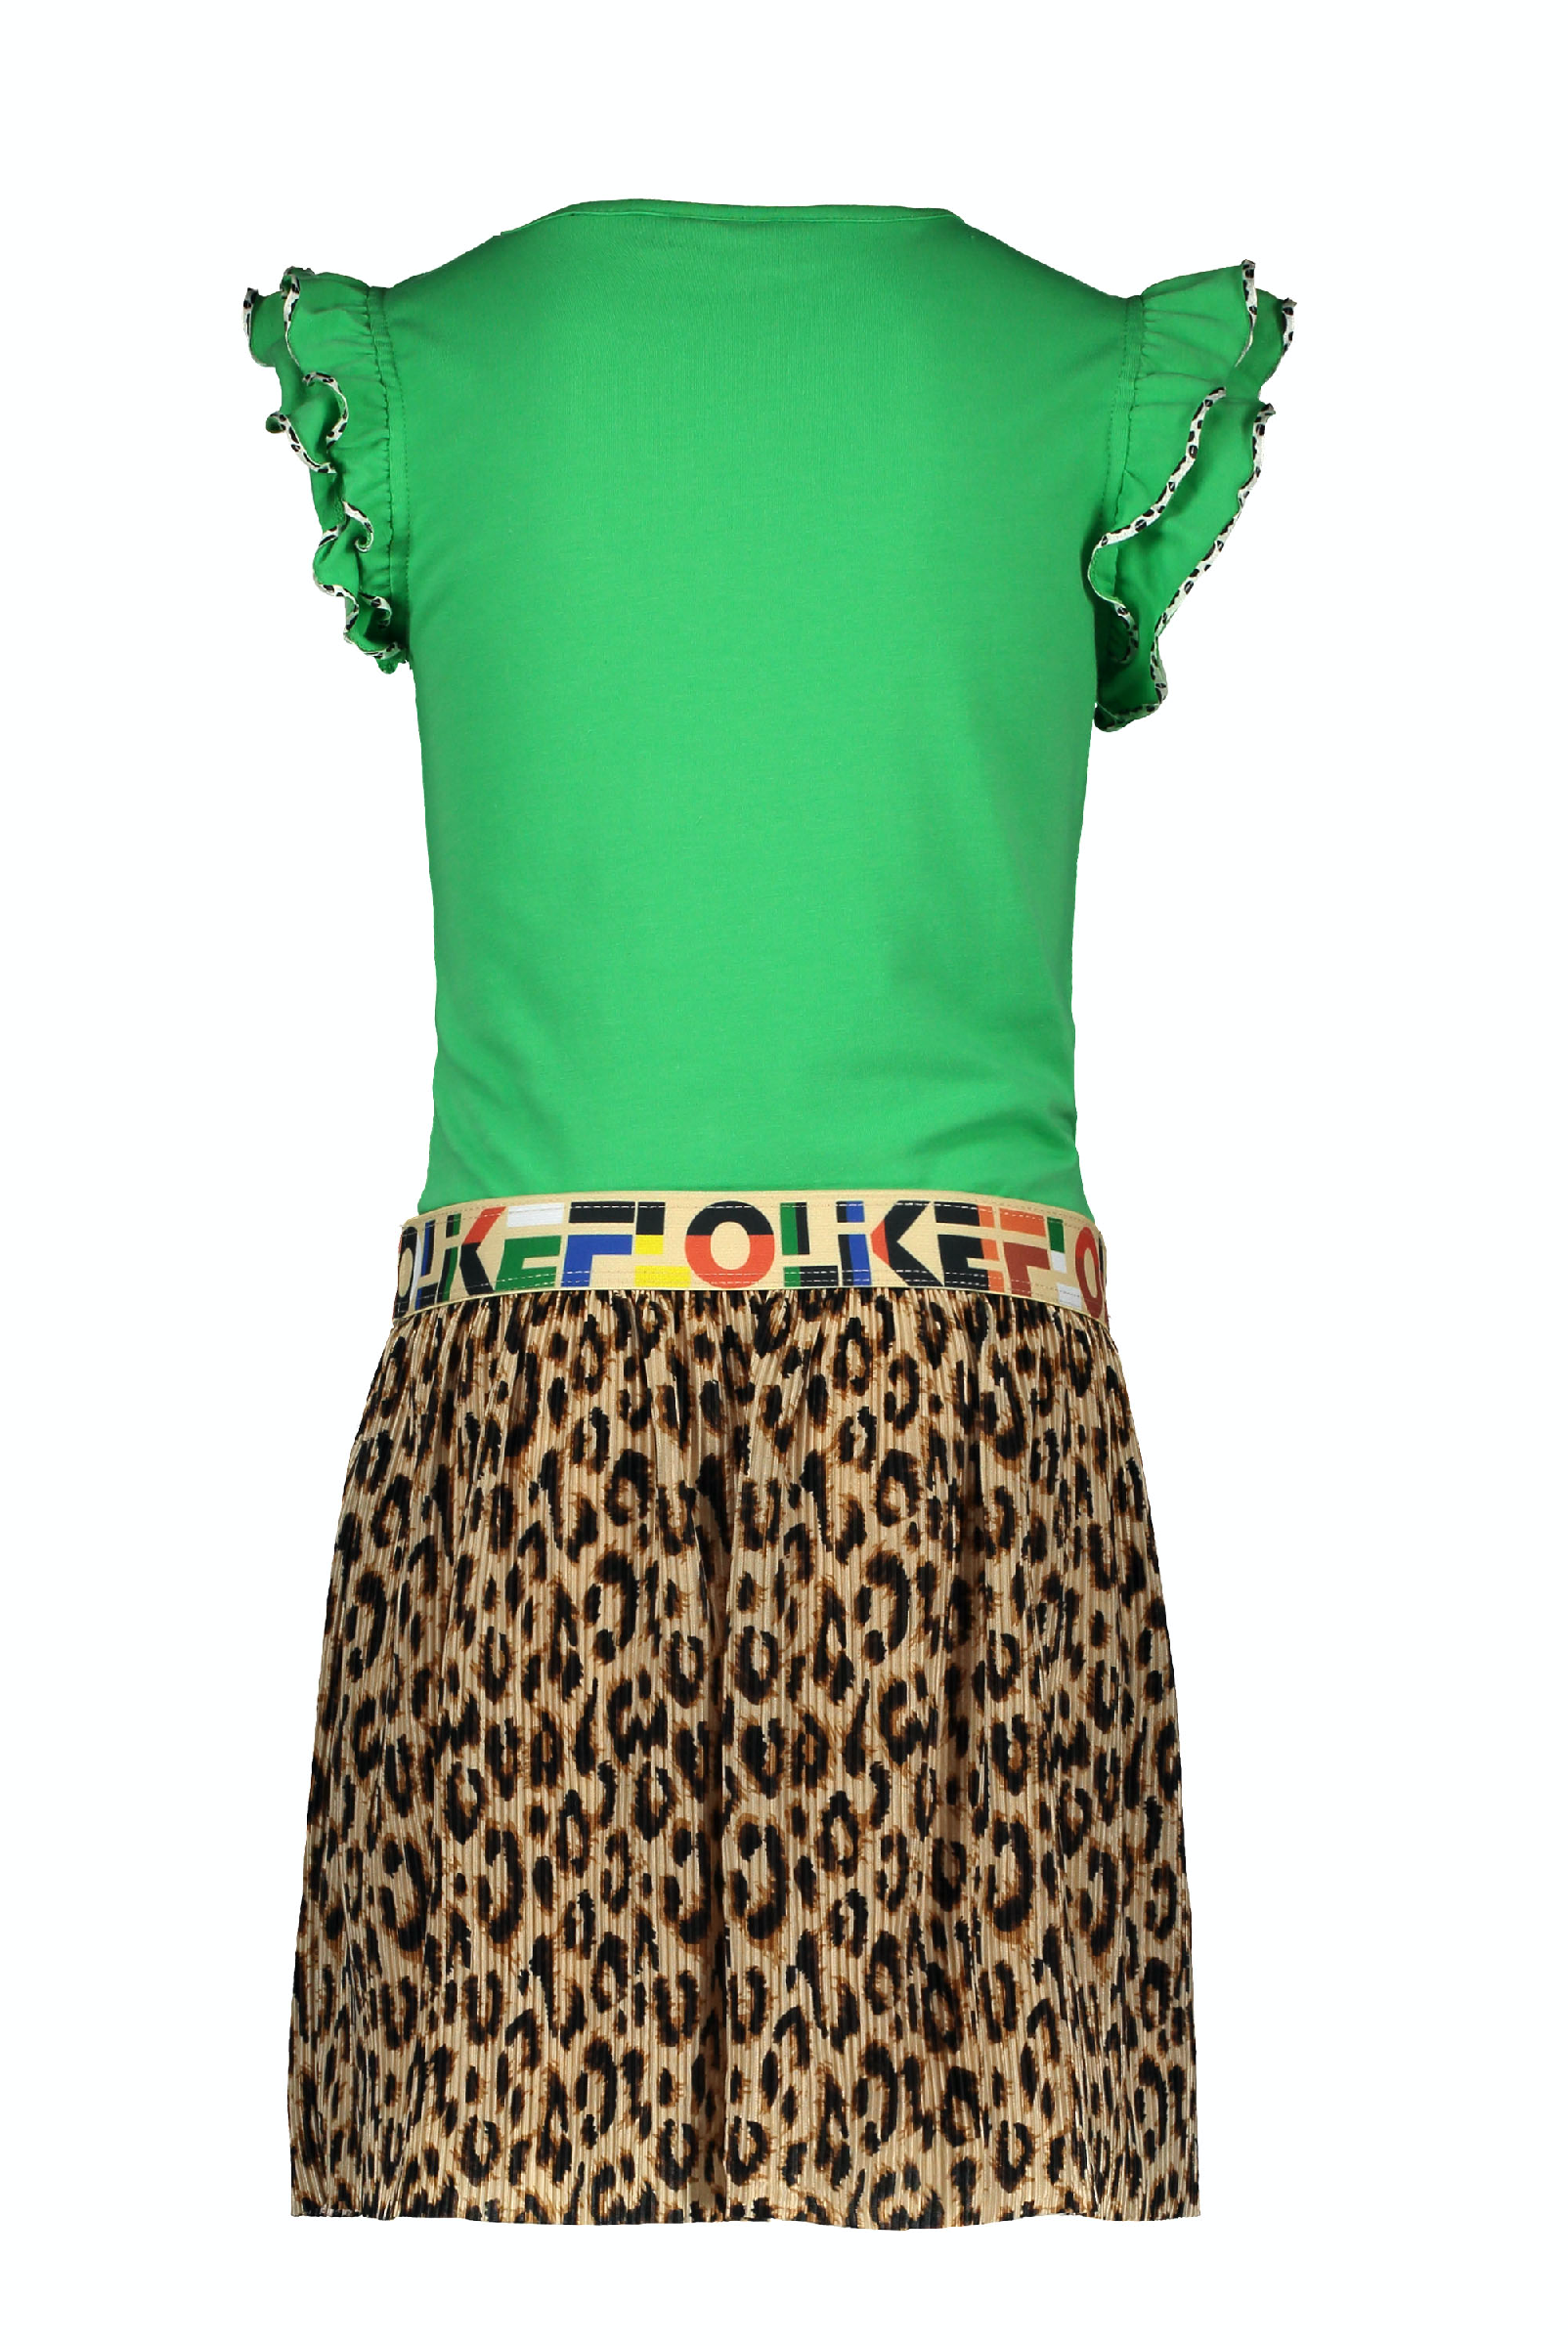 Meisjes Flo girls green dress with AO panter plisse skirt van Flo in de kleur Green in maat 152.